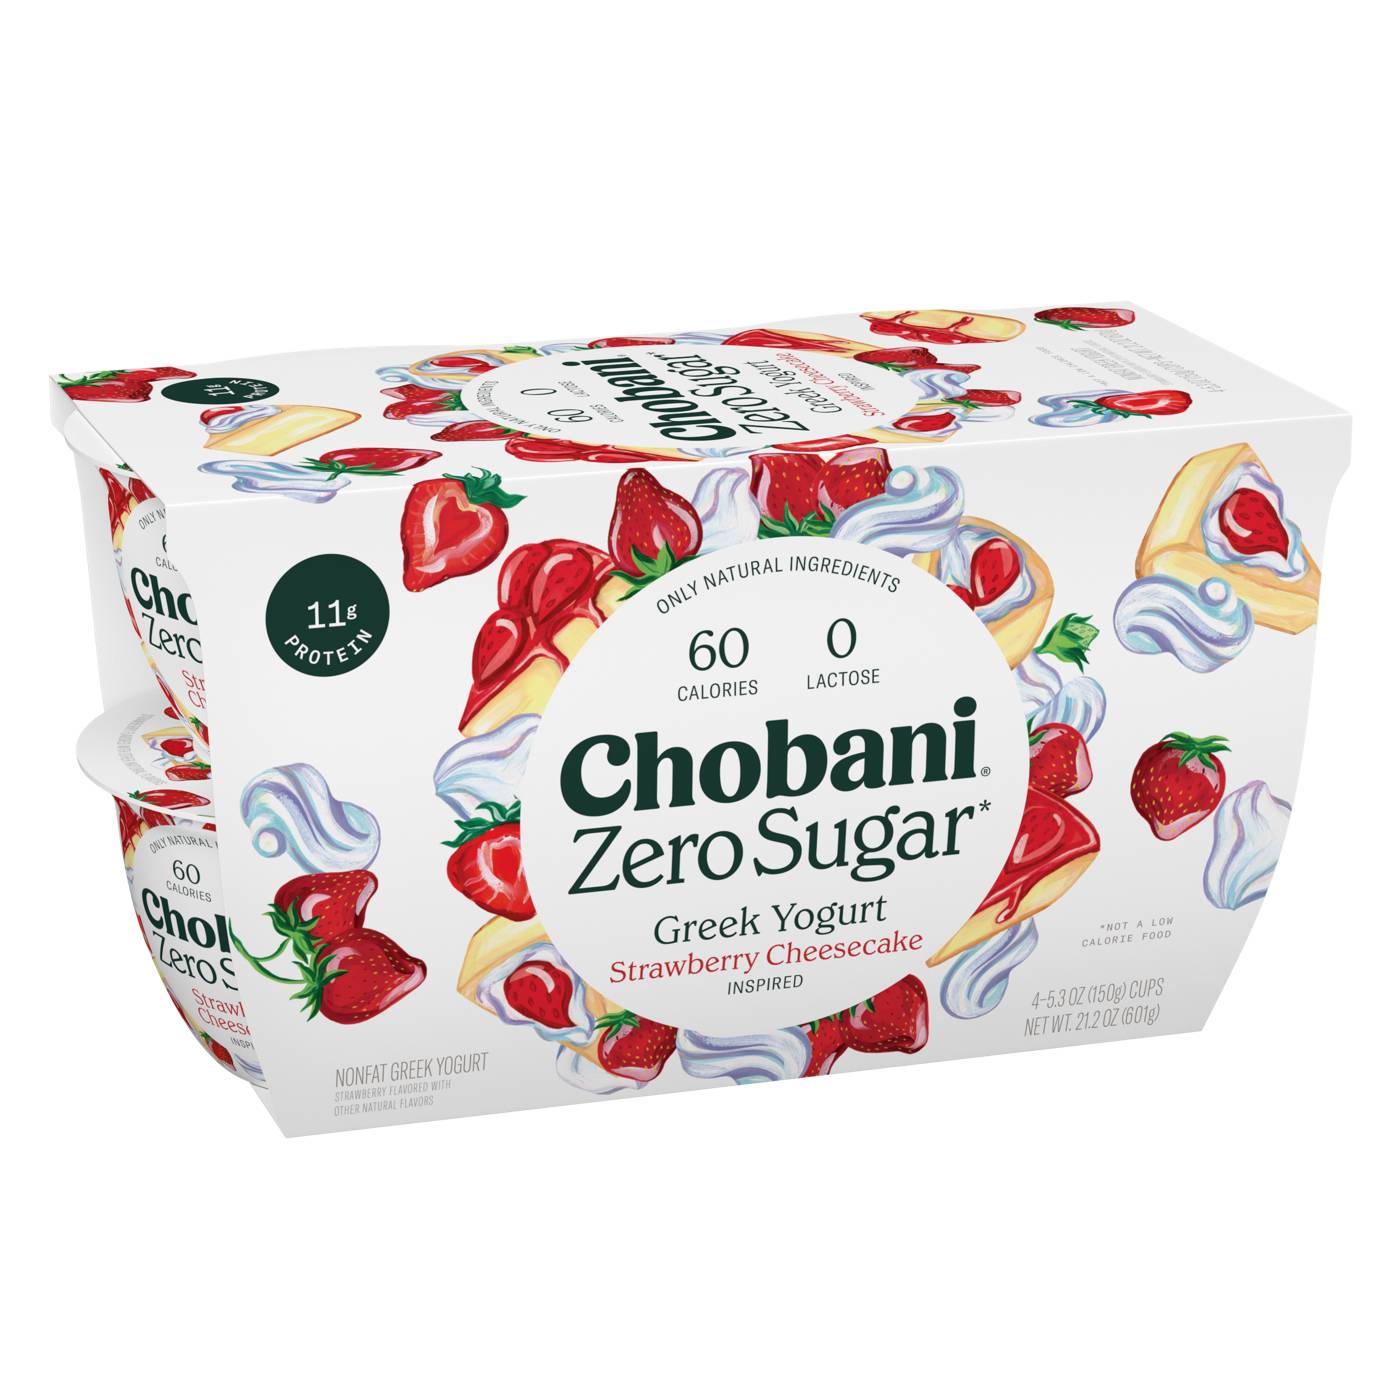 Chobani Zero Sugar Strawberry Cheesecake Greek Yogurt; image 3 of 5